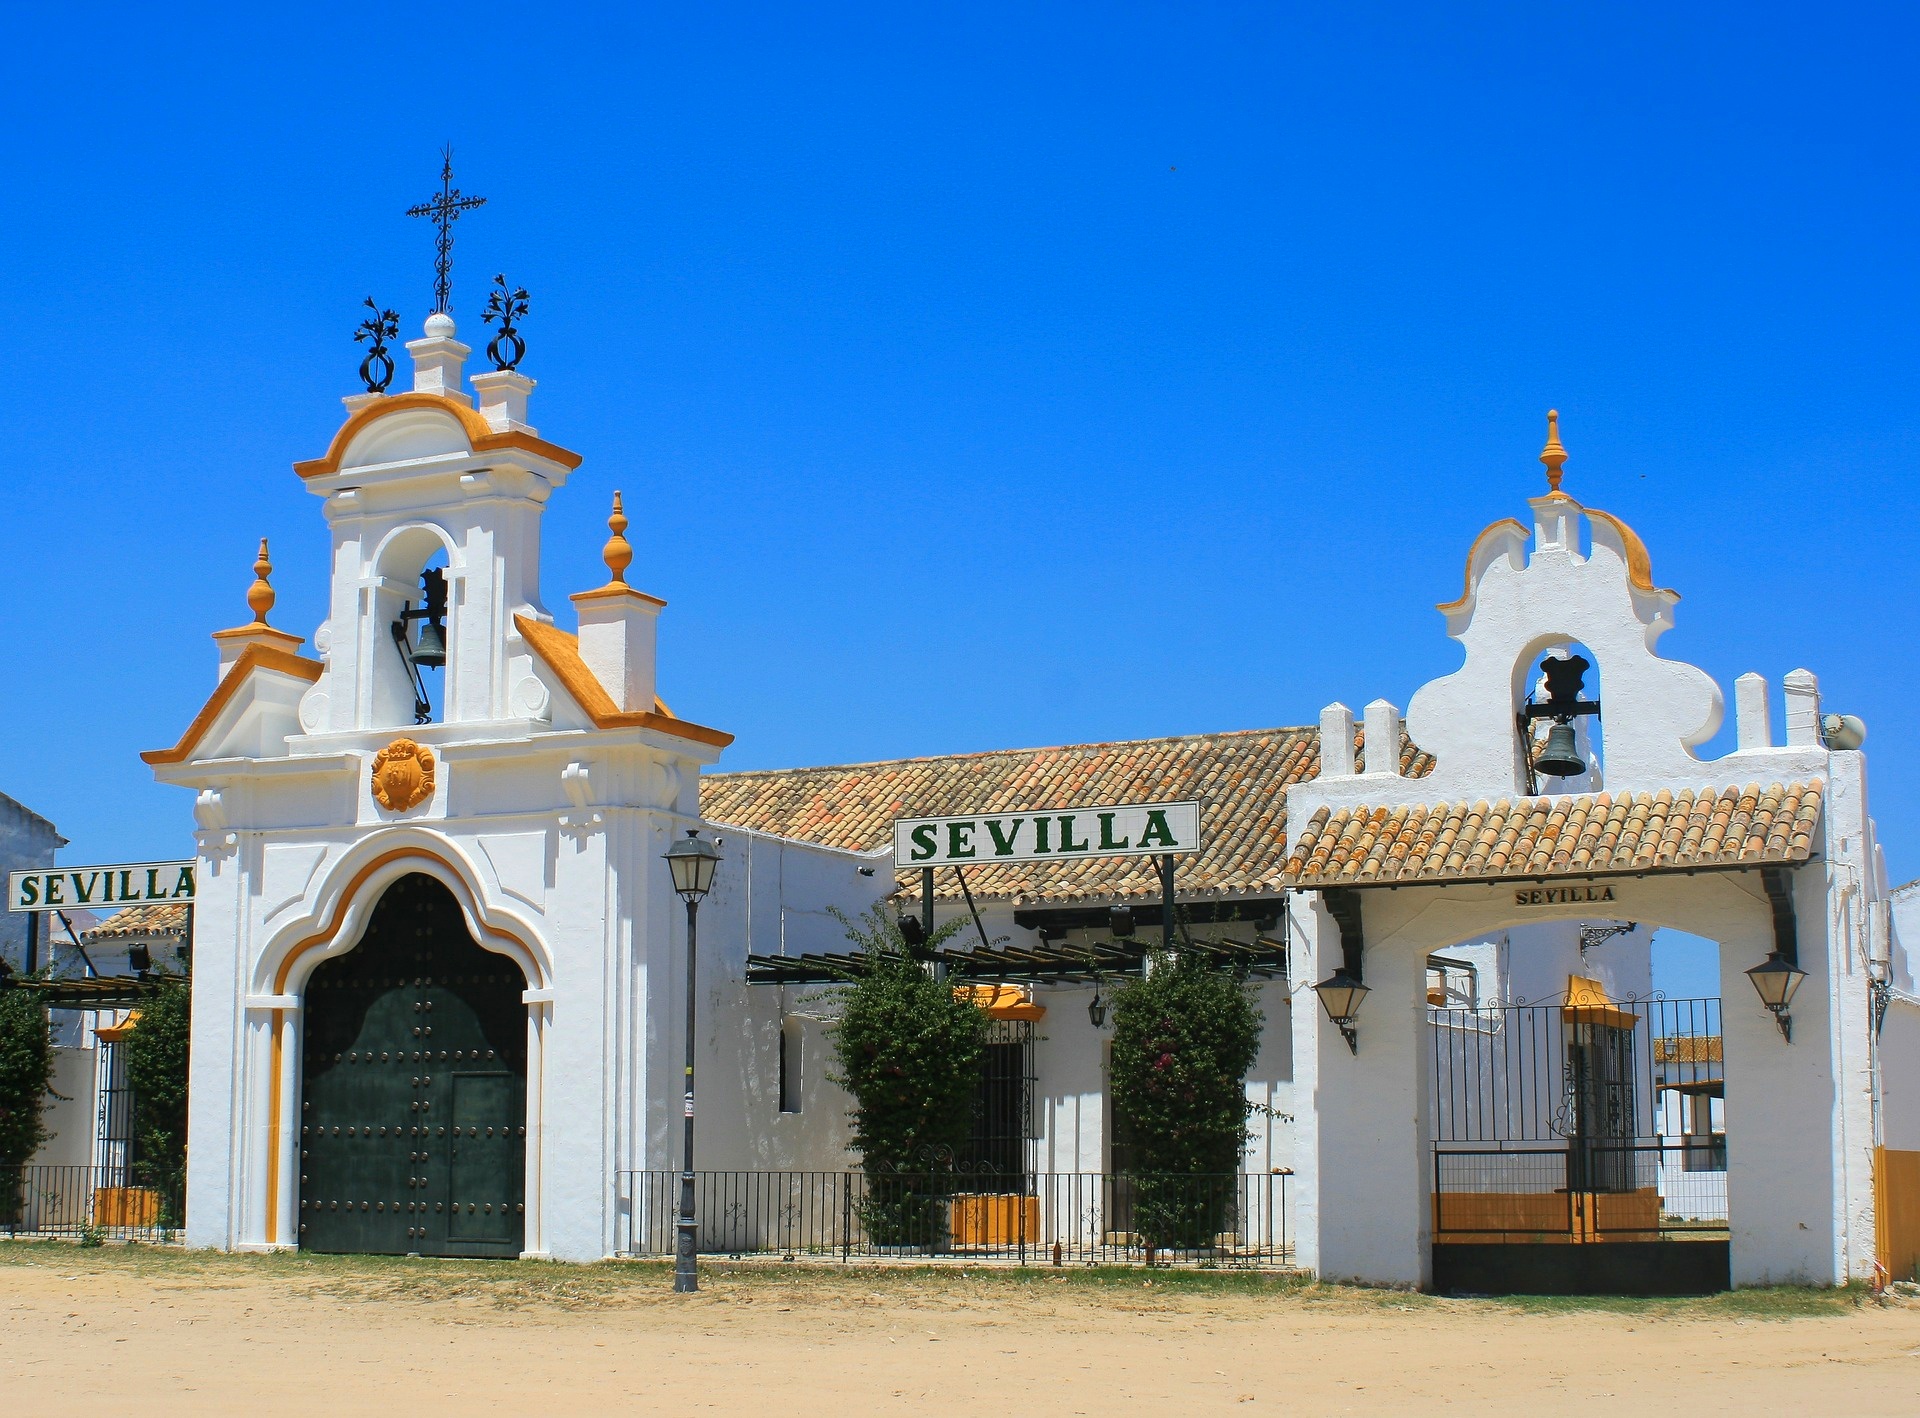 The Sevilla pavallion in El Rocio